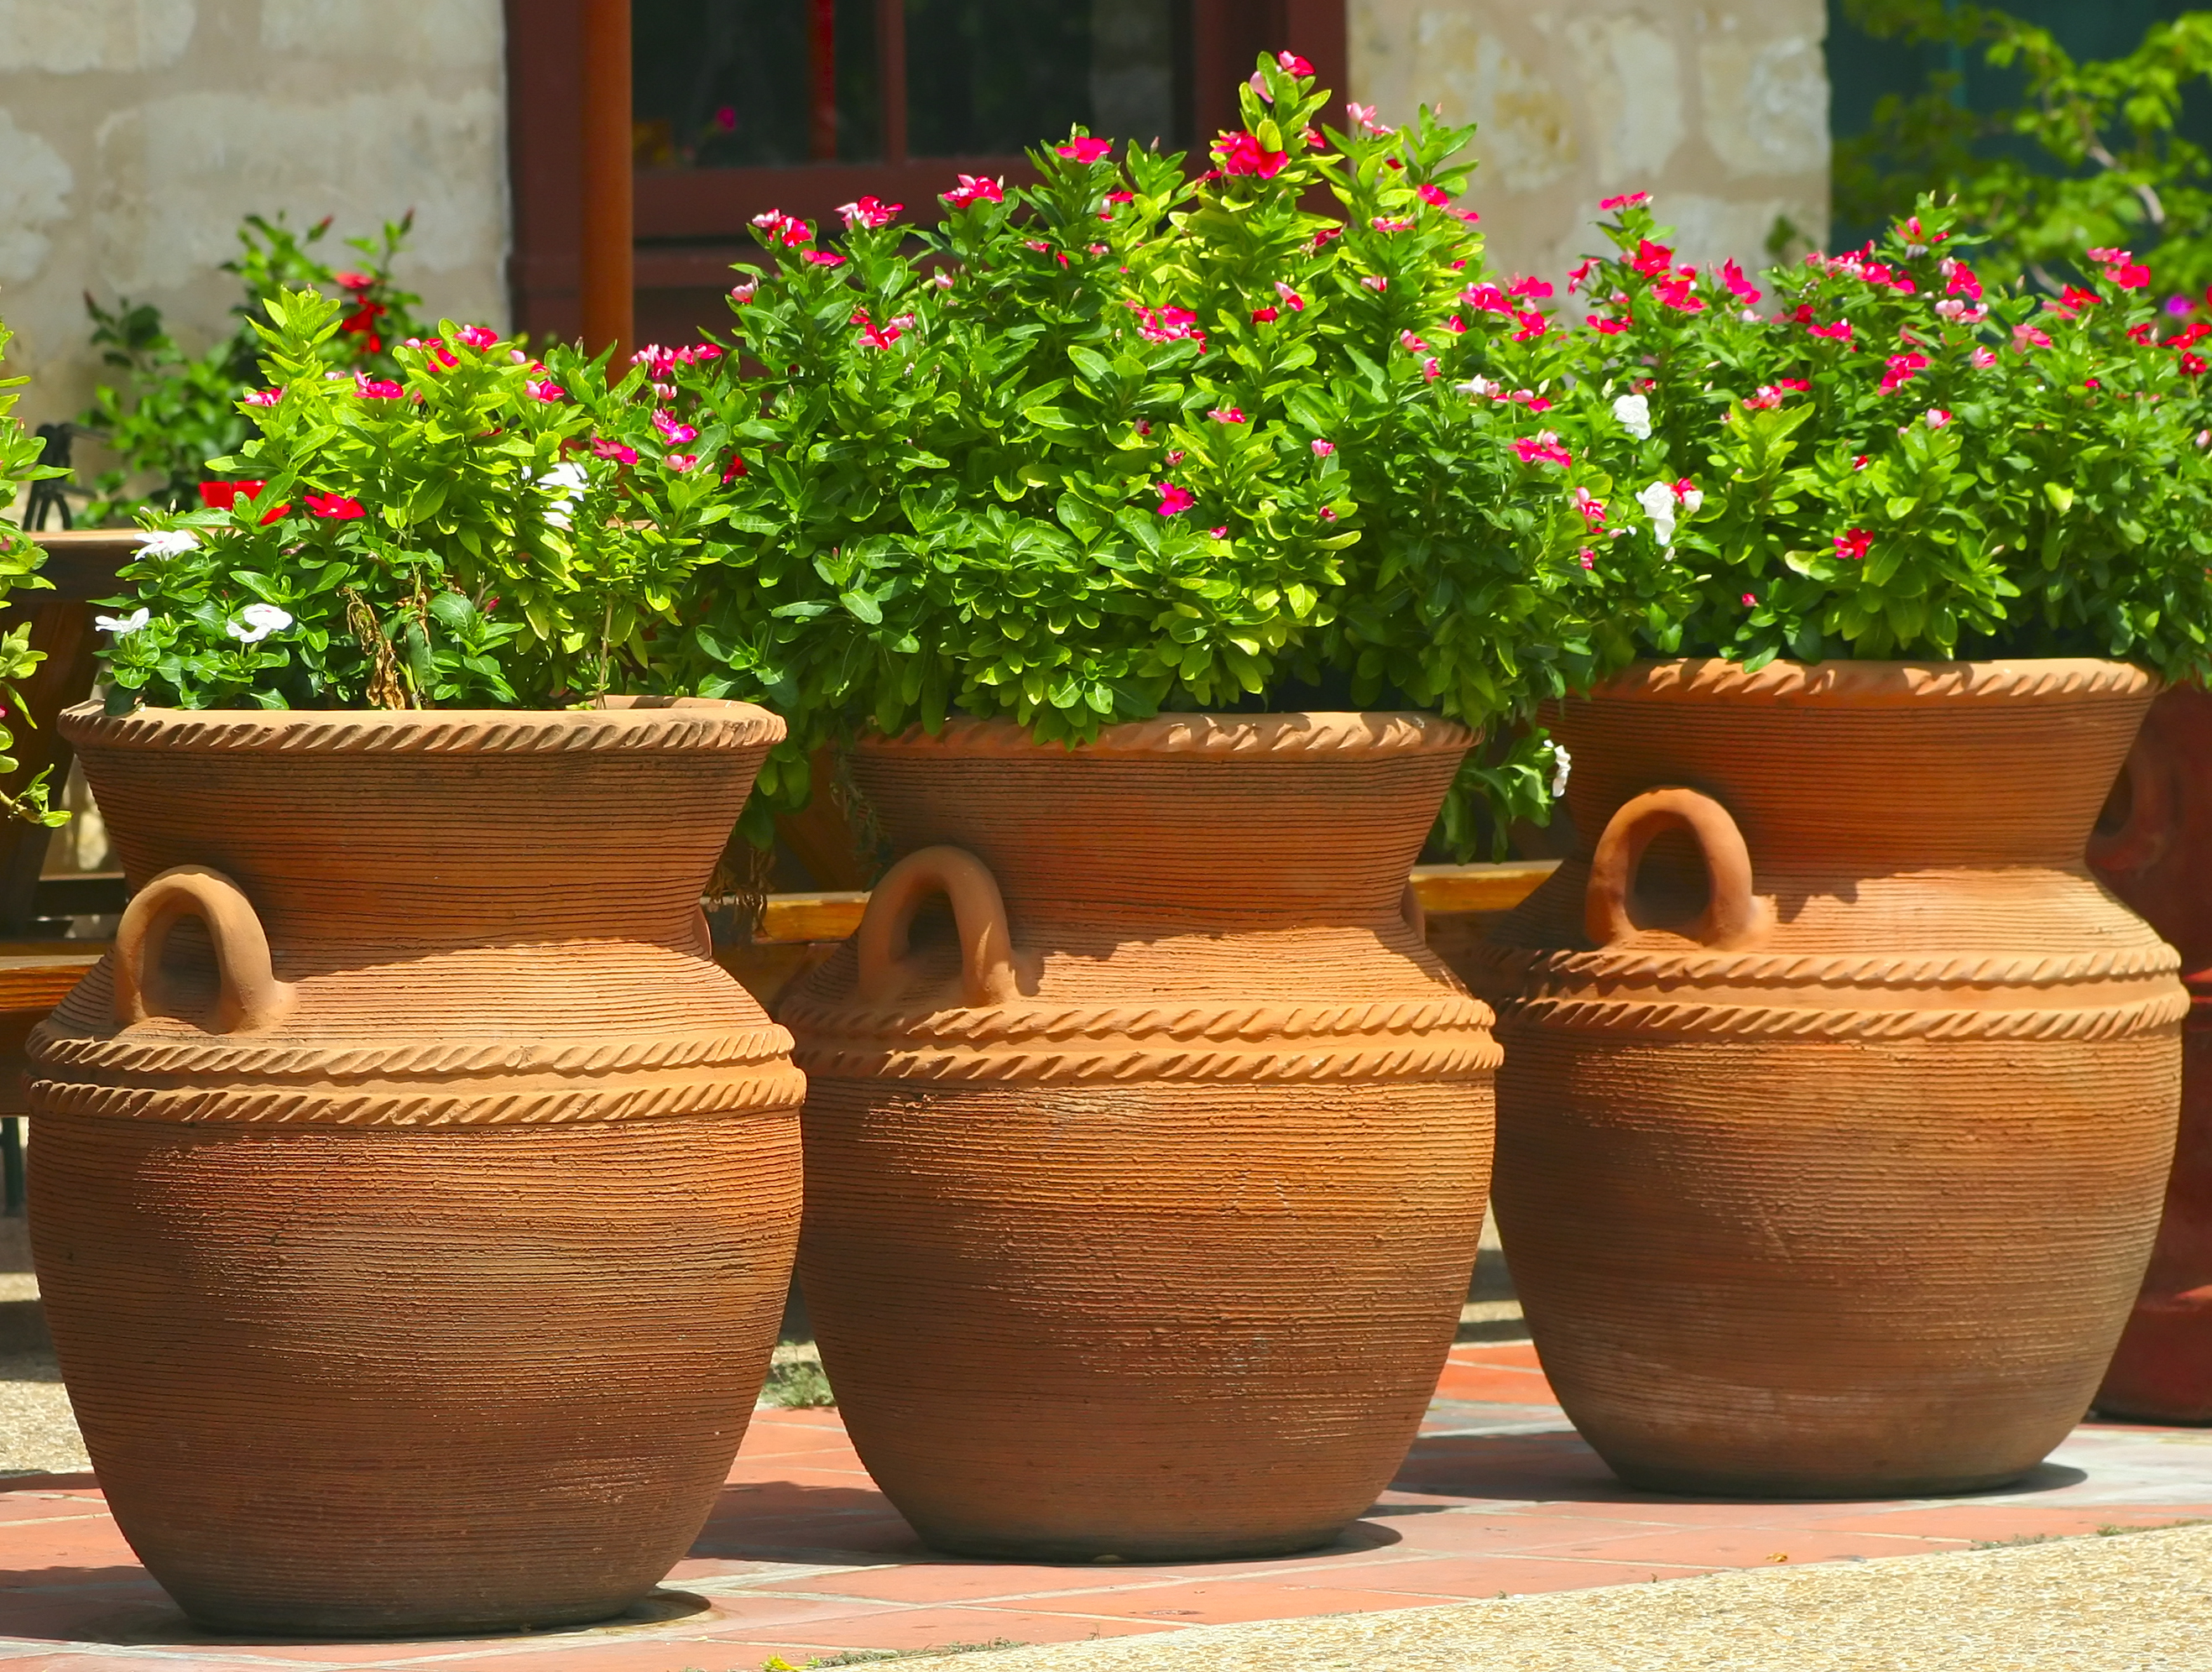 Les jarres en terre cuite constituent les pièces maîtresses de votre décoration extérieure. Copyright (c) 2006 Debbie Vinci/Shutterstock.